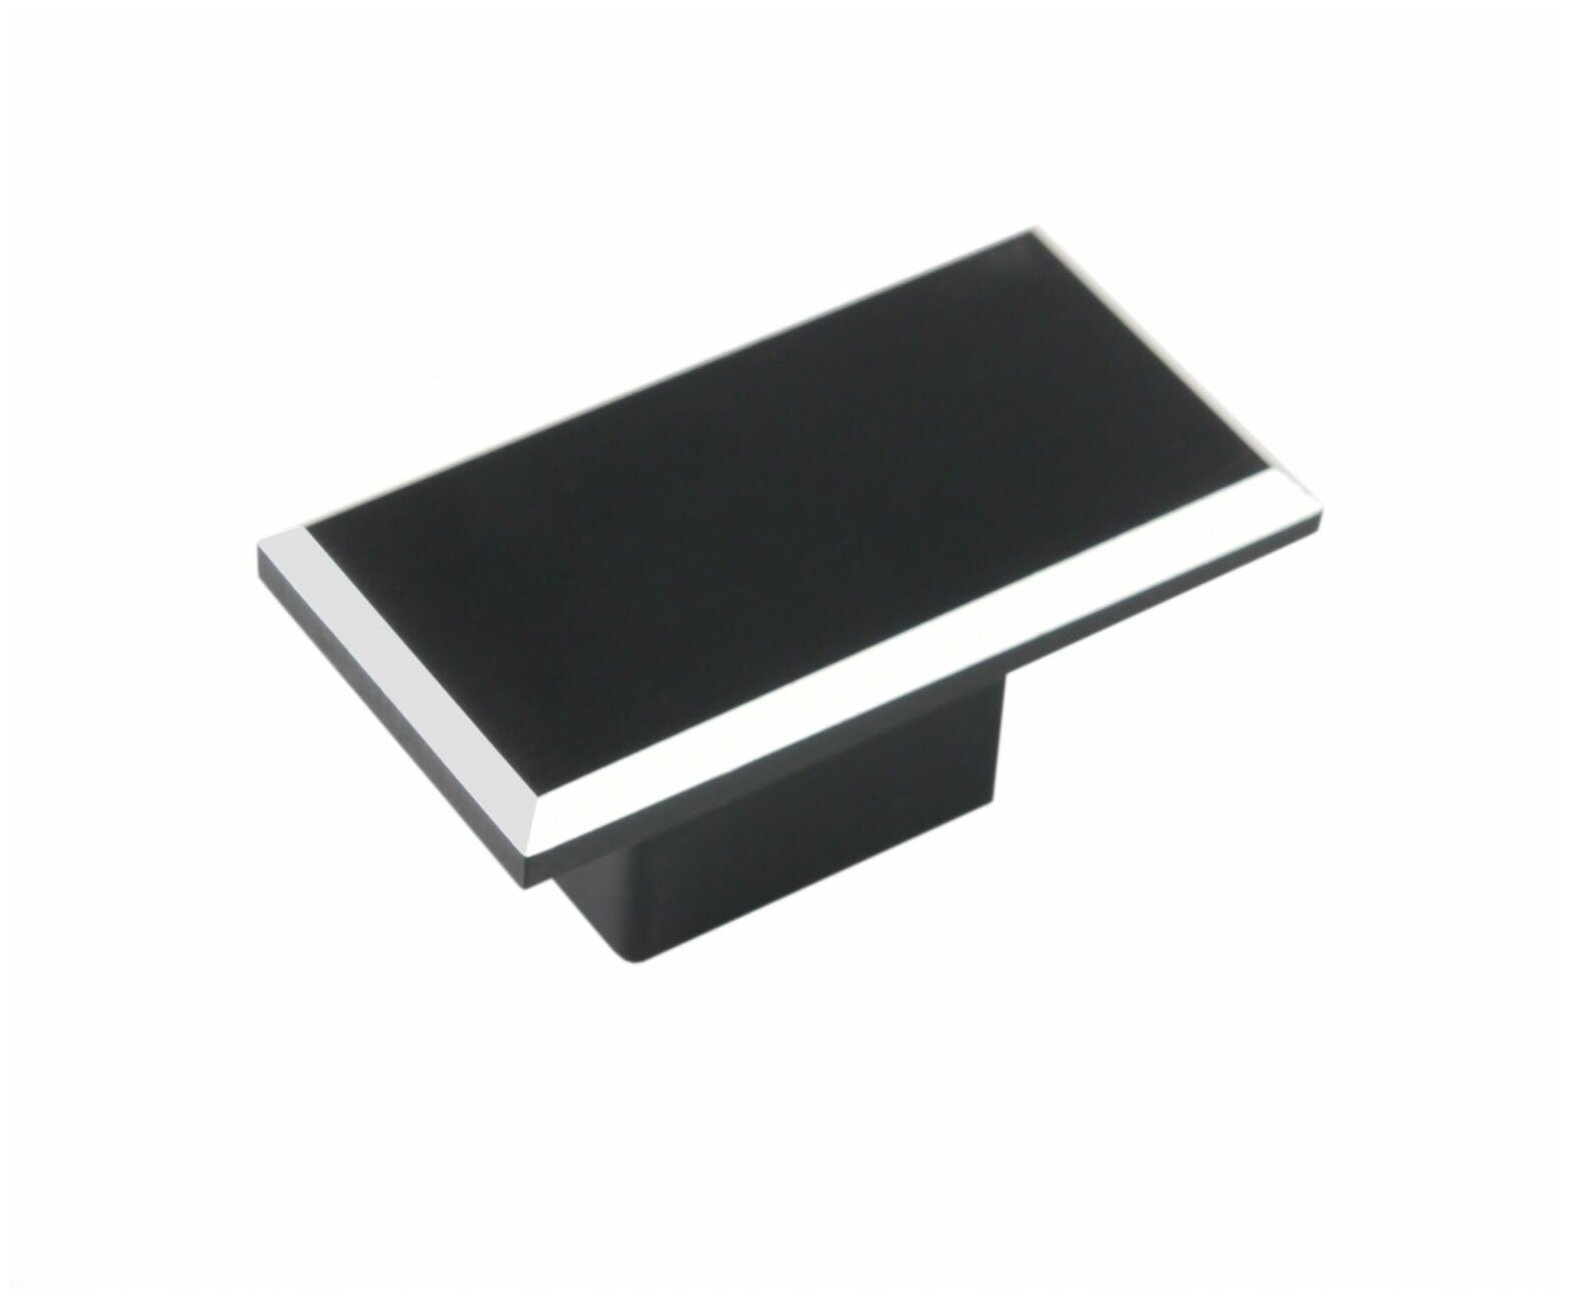 Ручка мебельная URBANISM длина - 50 мм установочный размер - 16 мм цвет - Чёрный матовый/алюминий материал-алюминий RS061BL/AL